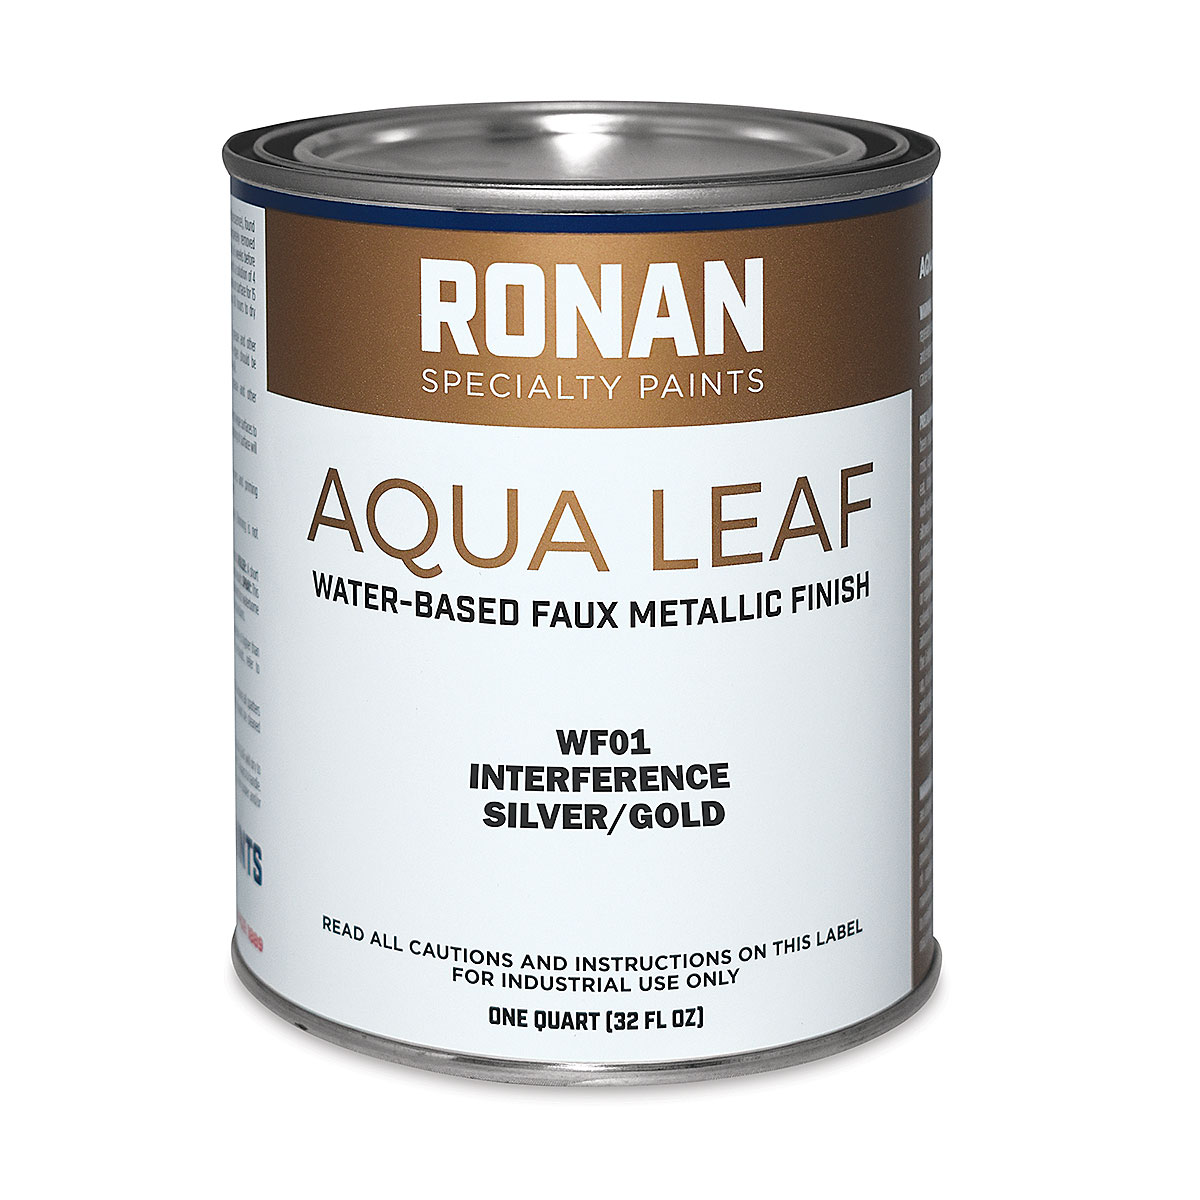 Buy Ronan Aqua Leaf Metallic Paint for less